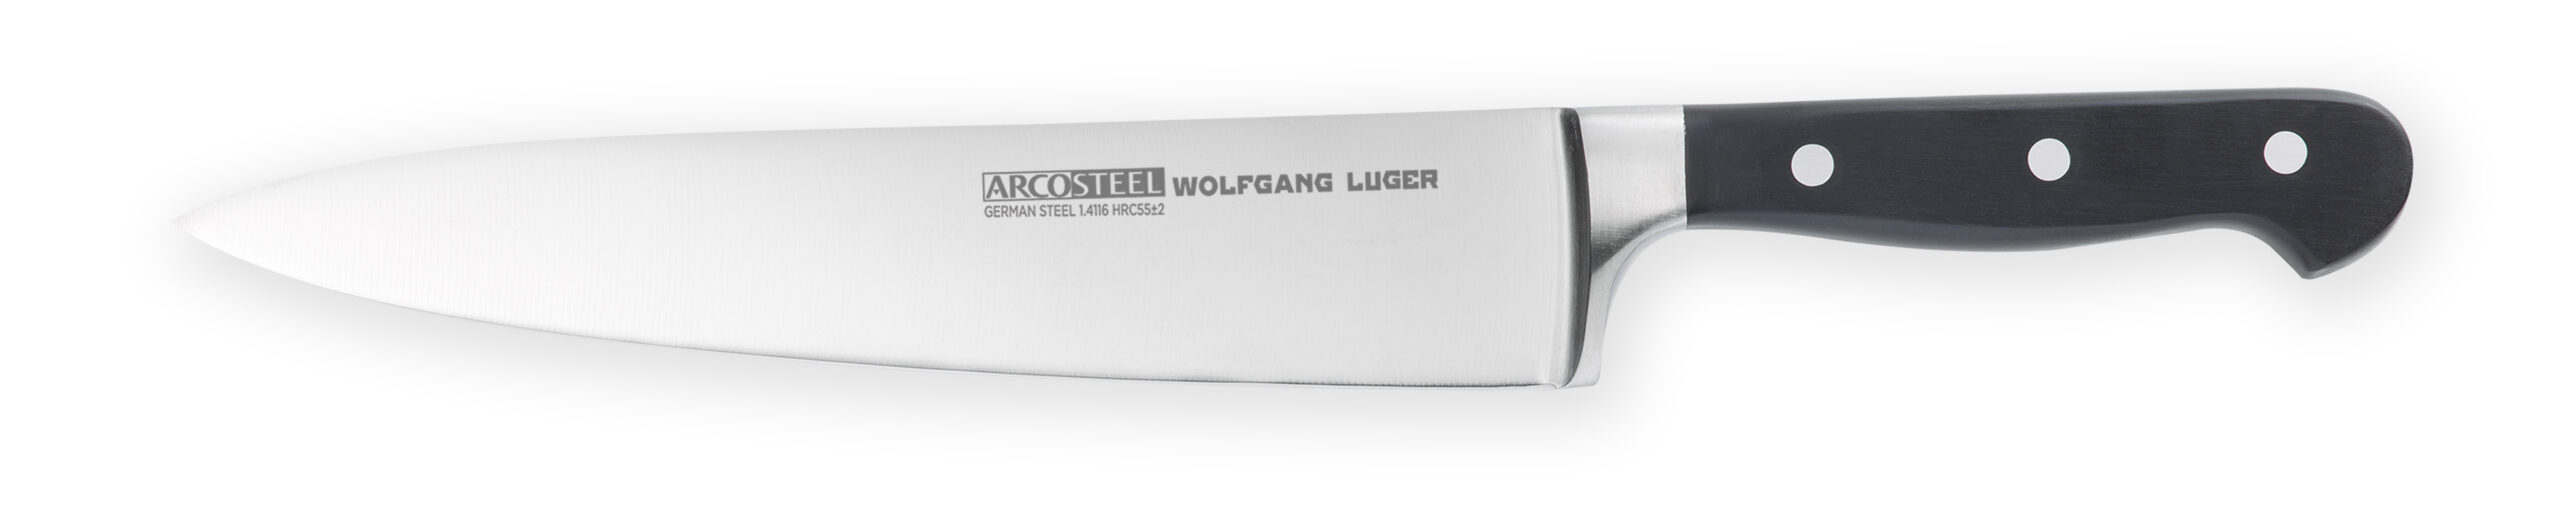 סכין ARCOSTEEL  וולפגאנג לוגר שף 20 ס